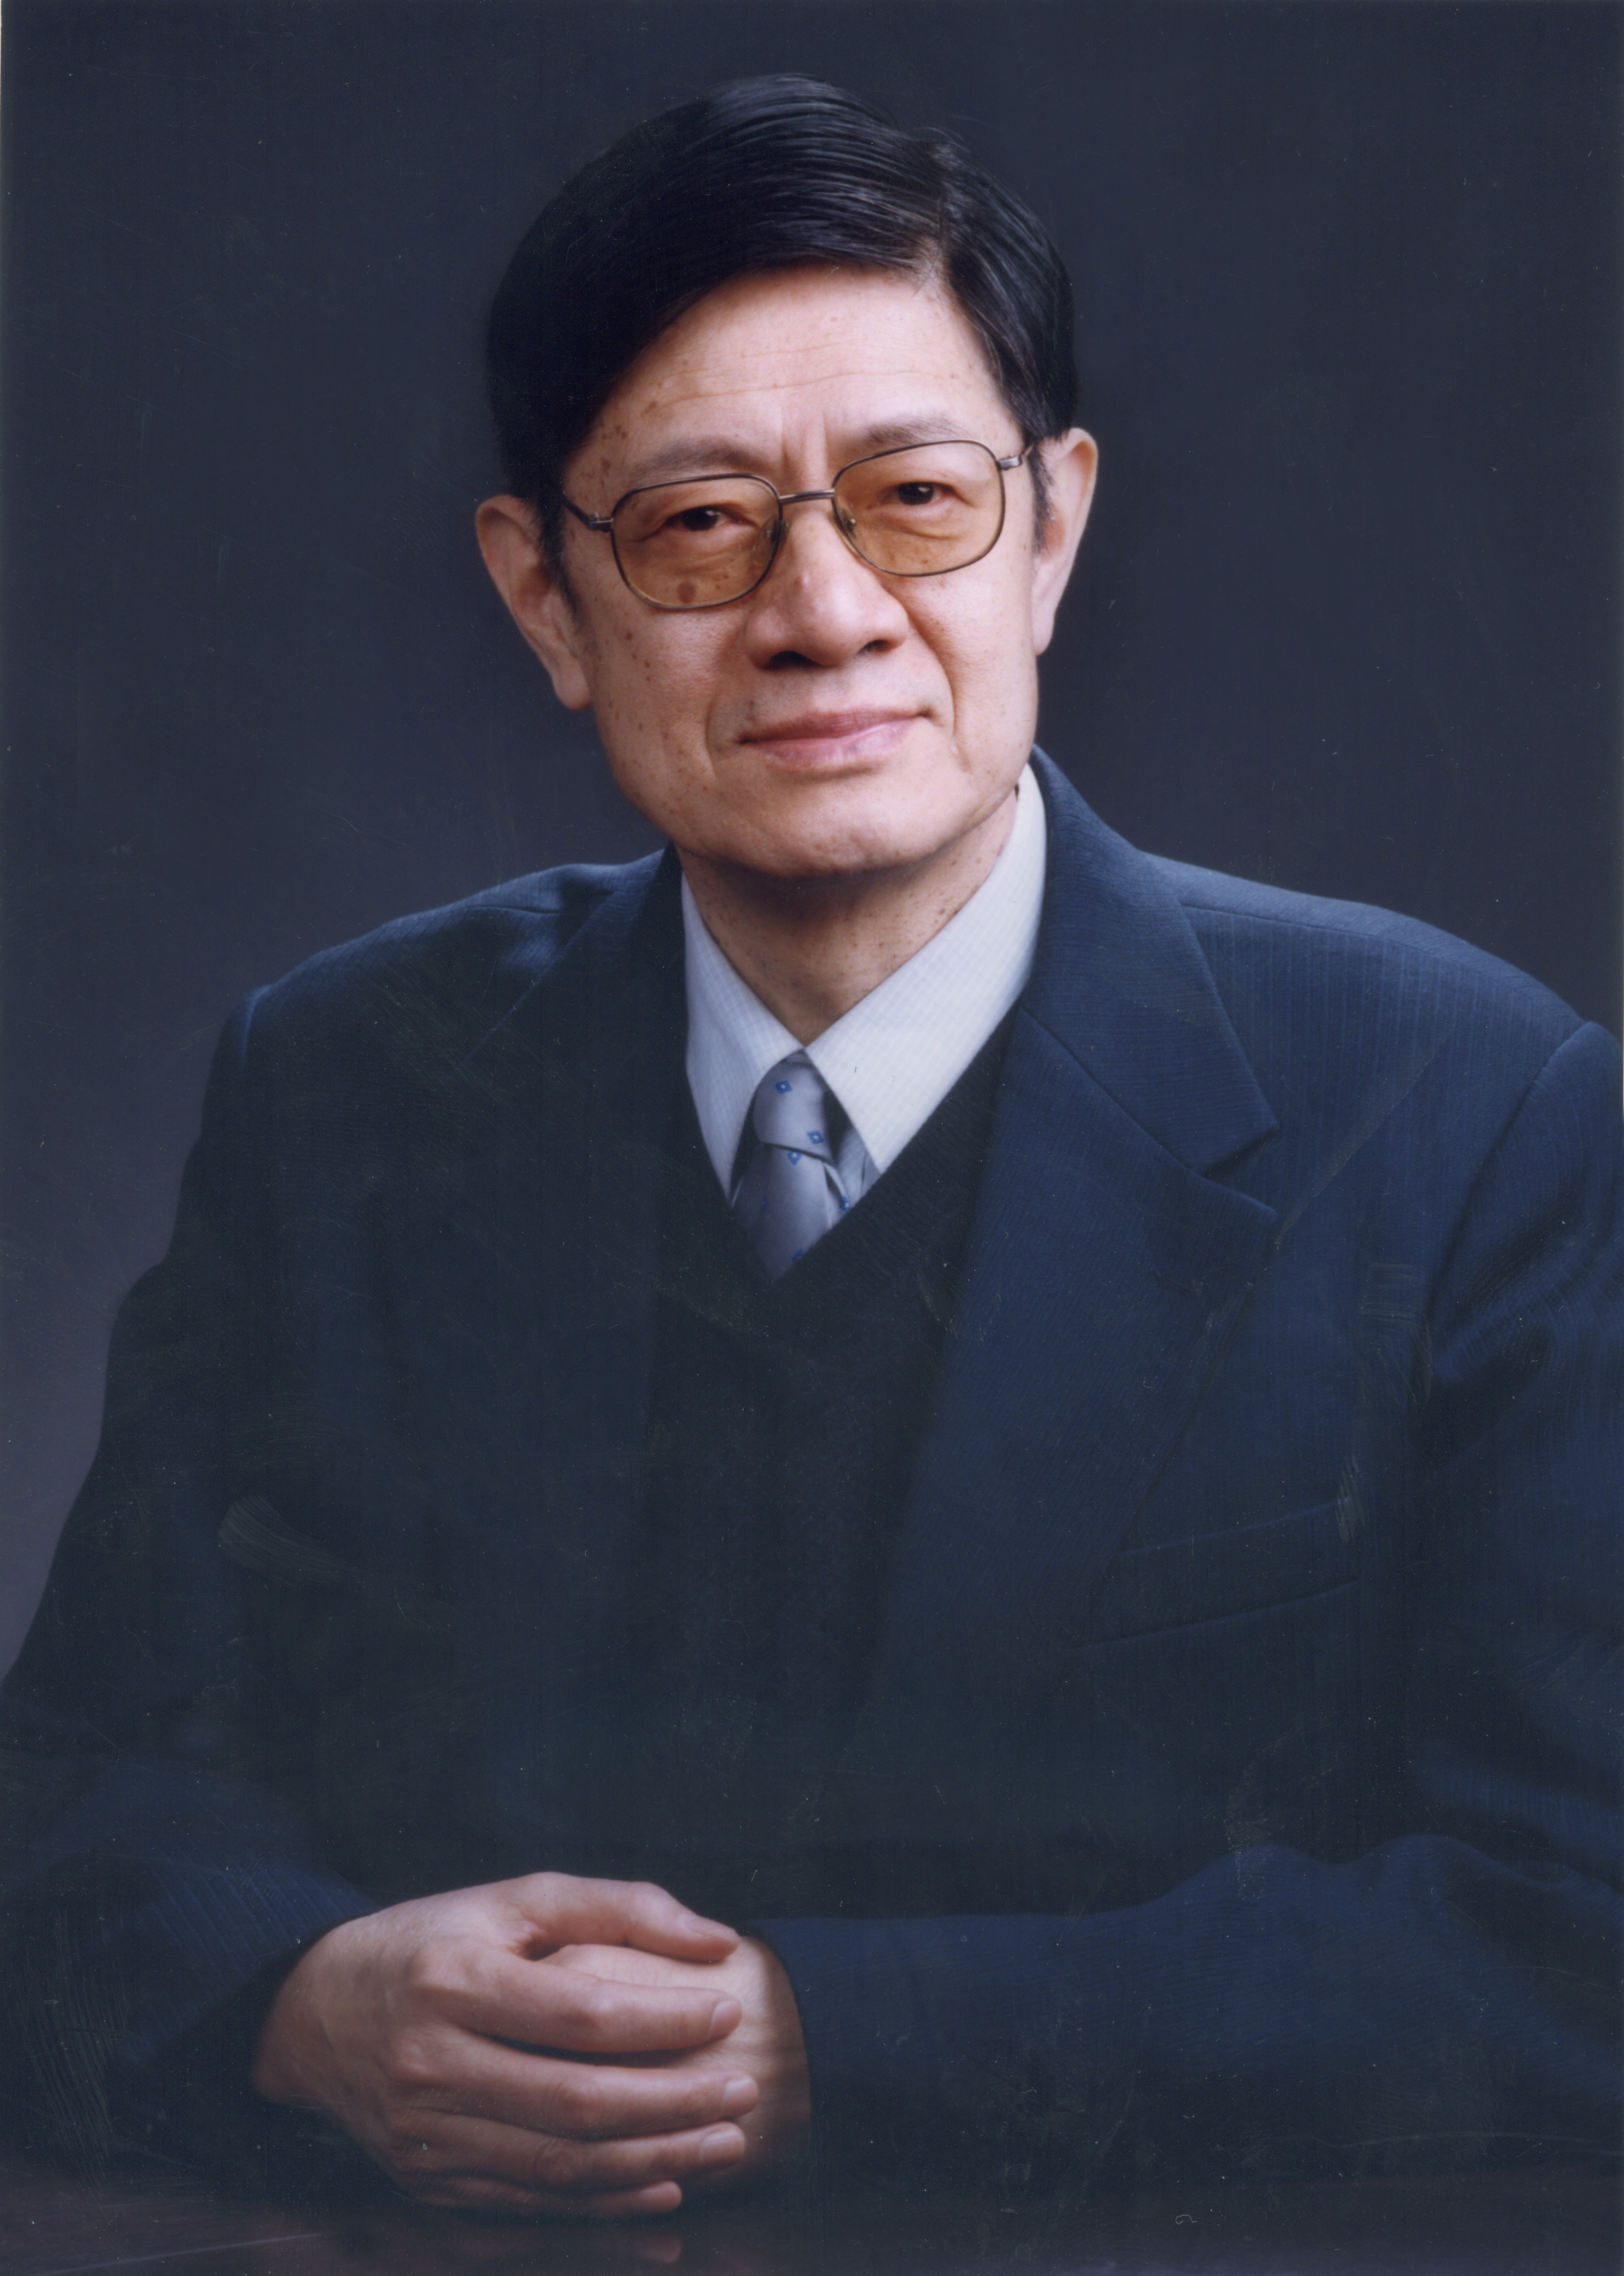 Zhang Zhuoyuan